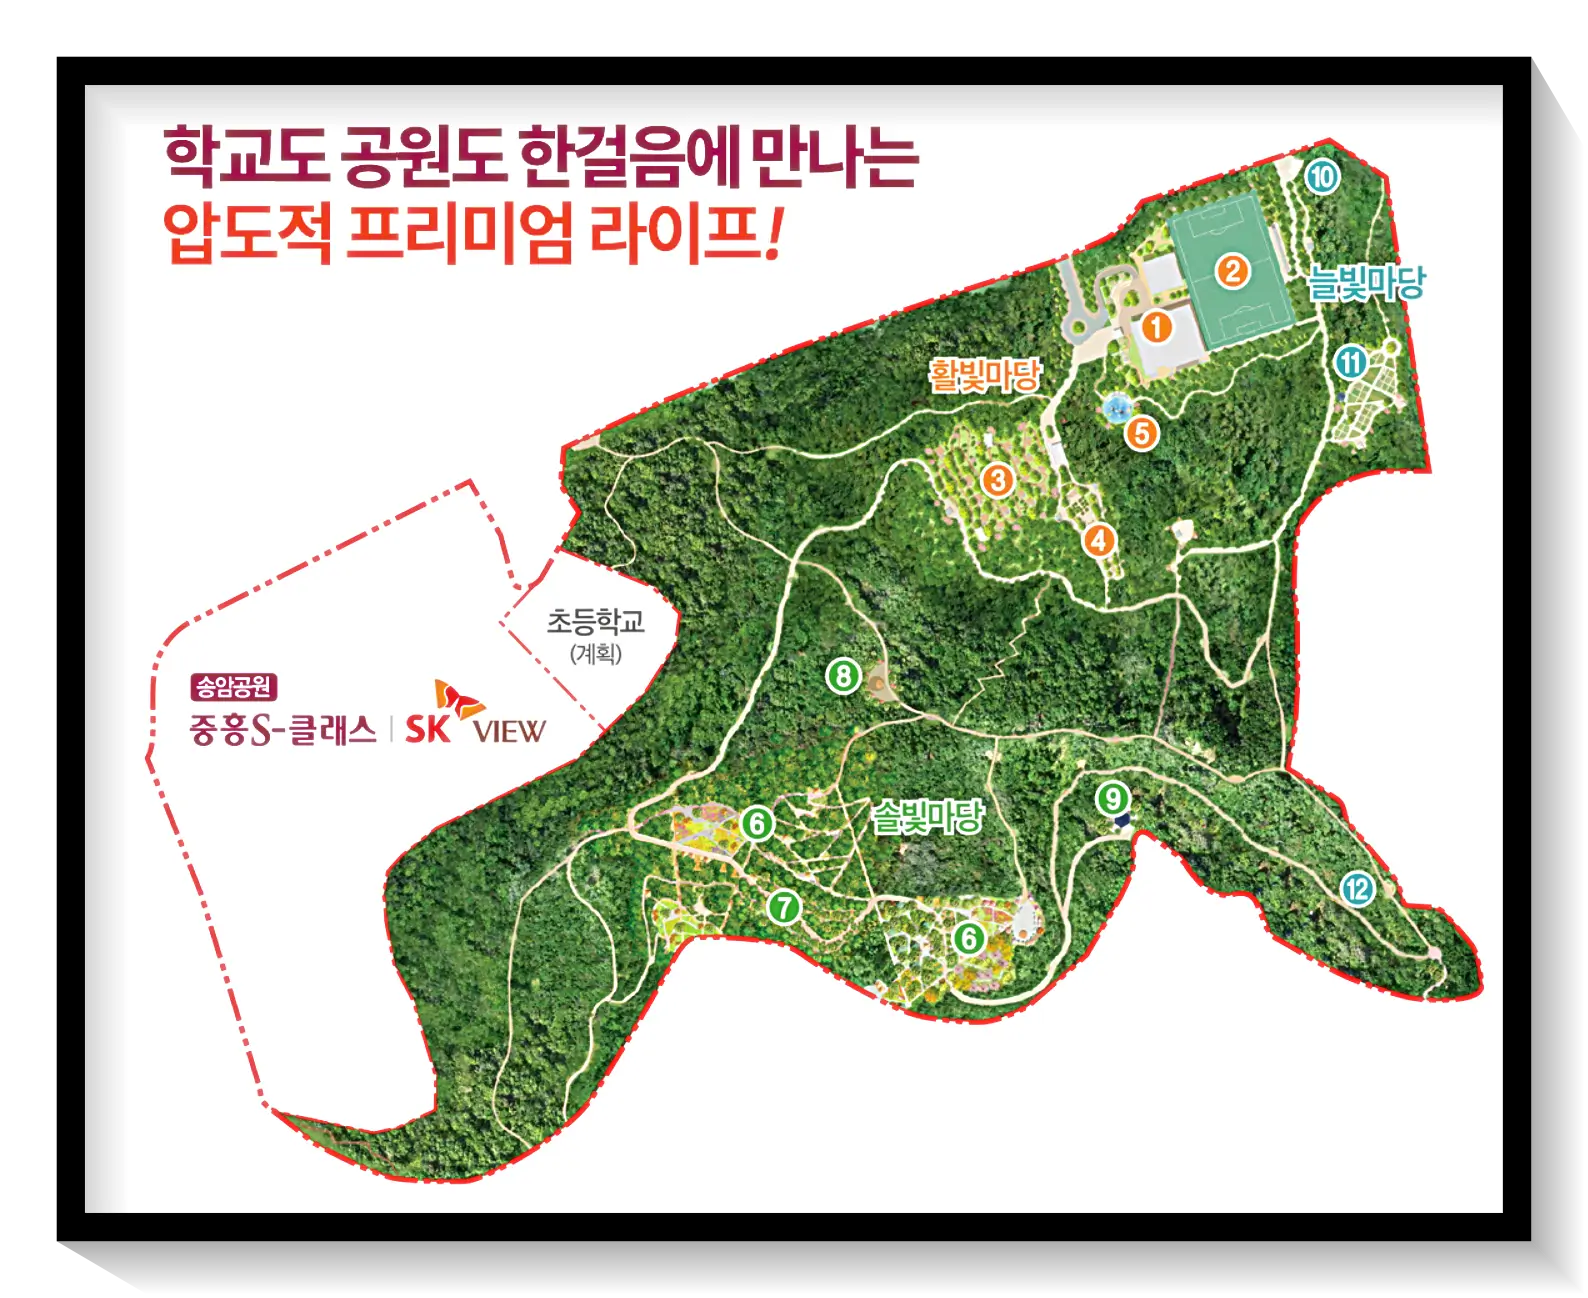 송암공원 중흥S클래스 학교 공원 프리미엄 소개이미지